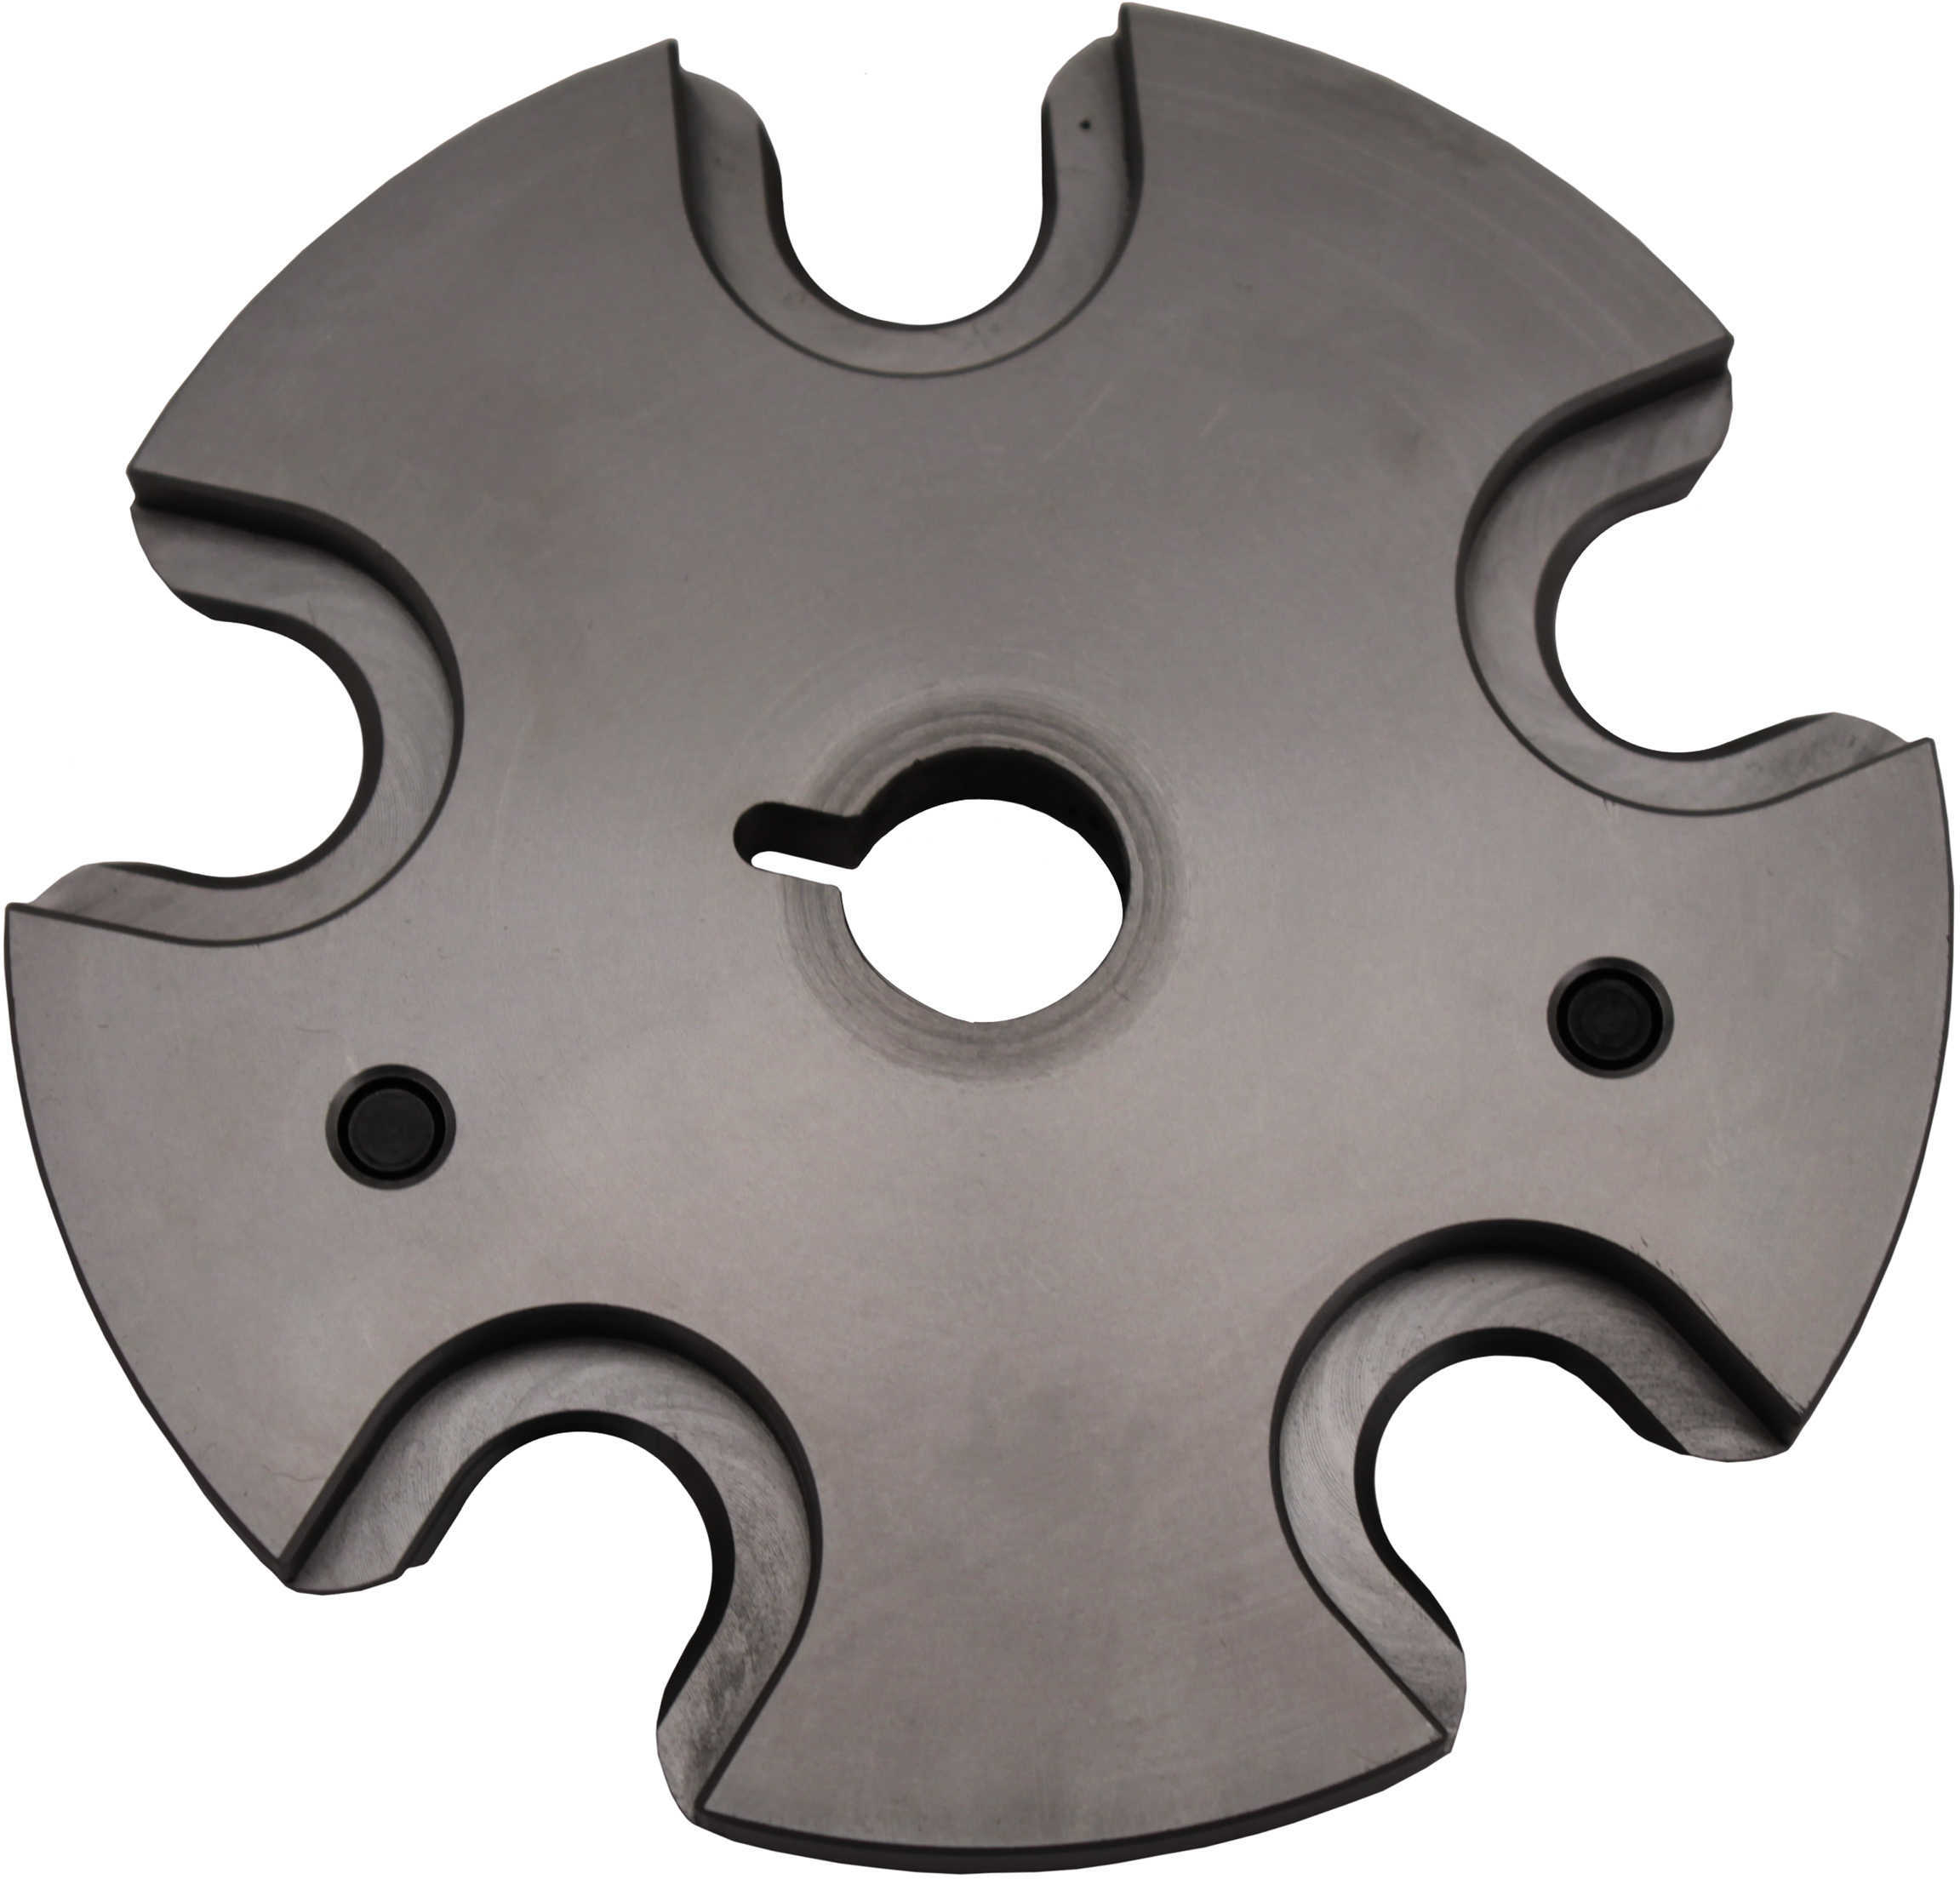 Hornady Lock-N-Load AP Progressive Press Shell Plate - #5 Size